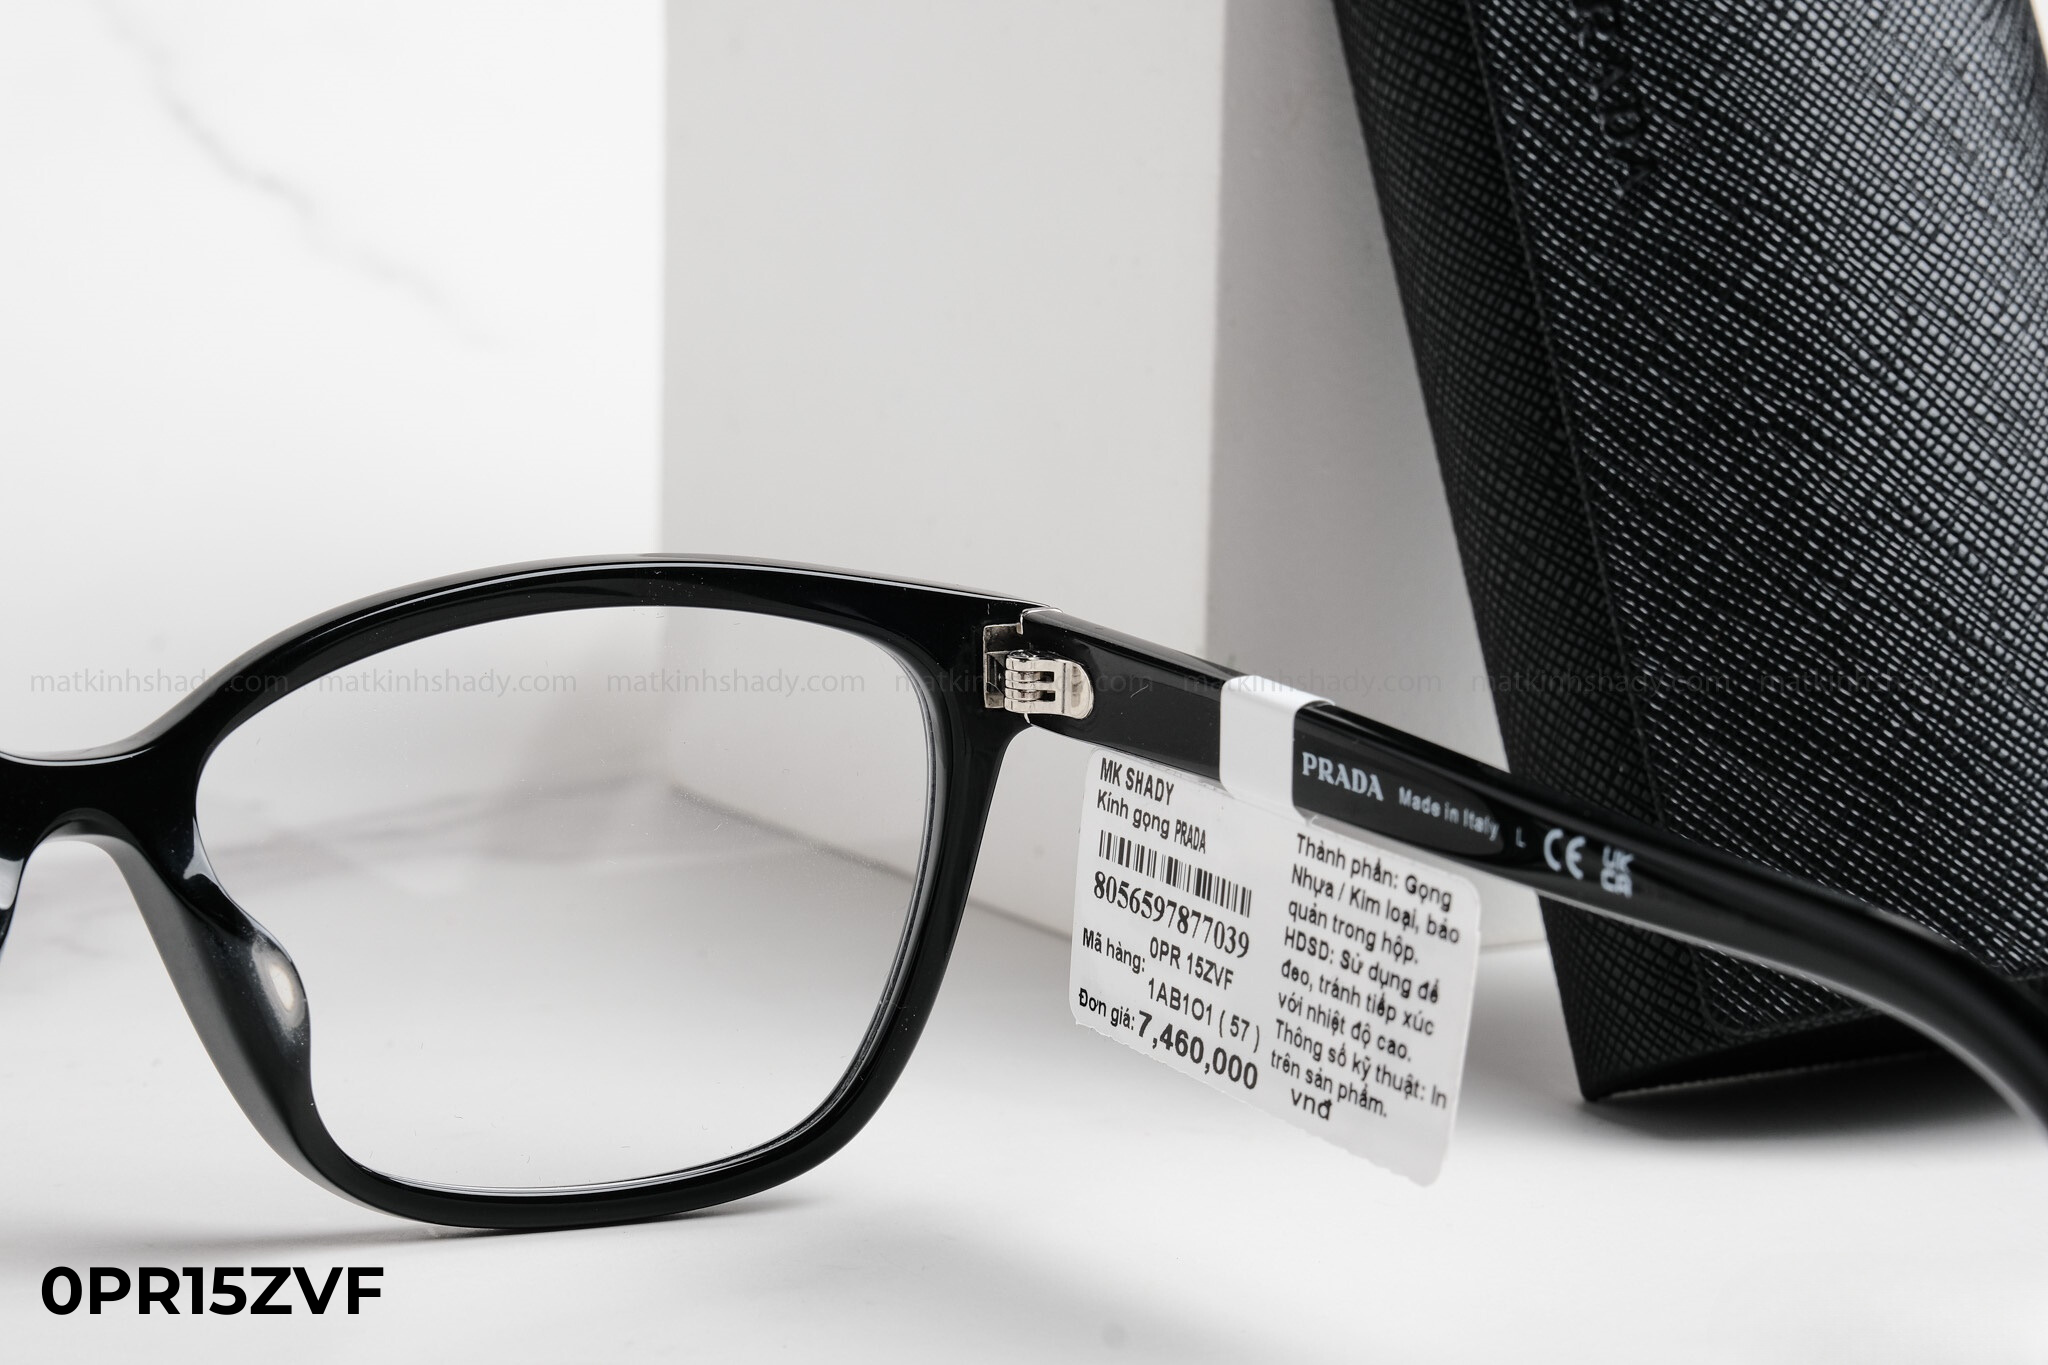  Prada - Eyewear - Glasses - 0PR15ZVF 